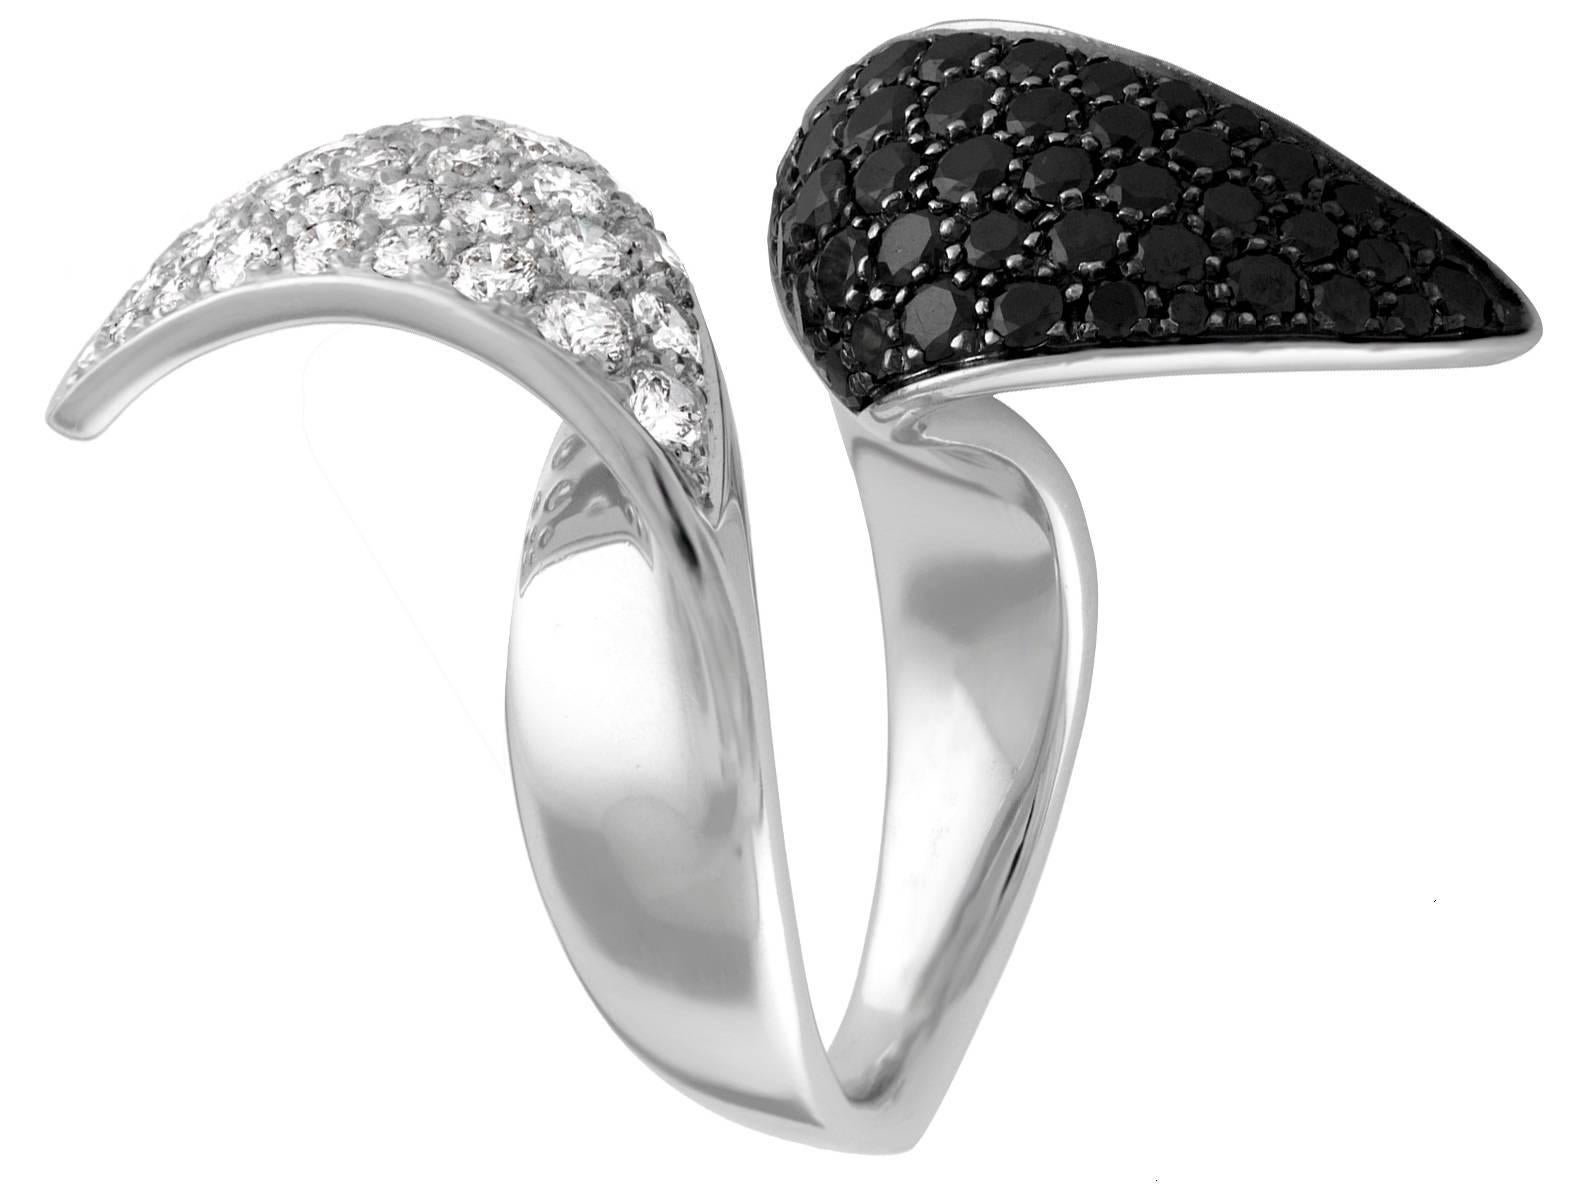 Sehr ungewöhnlicher Bypass-Ring
Der Ring ist 18K Weißgold
Es gibt 2,50 Karat in schwarzen Diamanten
Es gibt 2,25 Karat in weißen Diamanten F VS
Der Ring ist von einem italienischen Designer IO SI Scavia.
Der Ring wird in Italien hergestellt.
Der